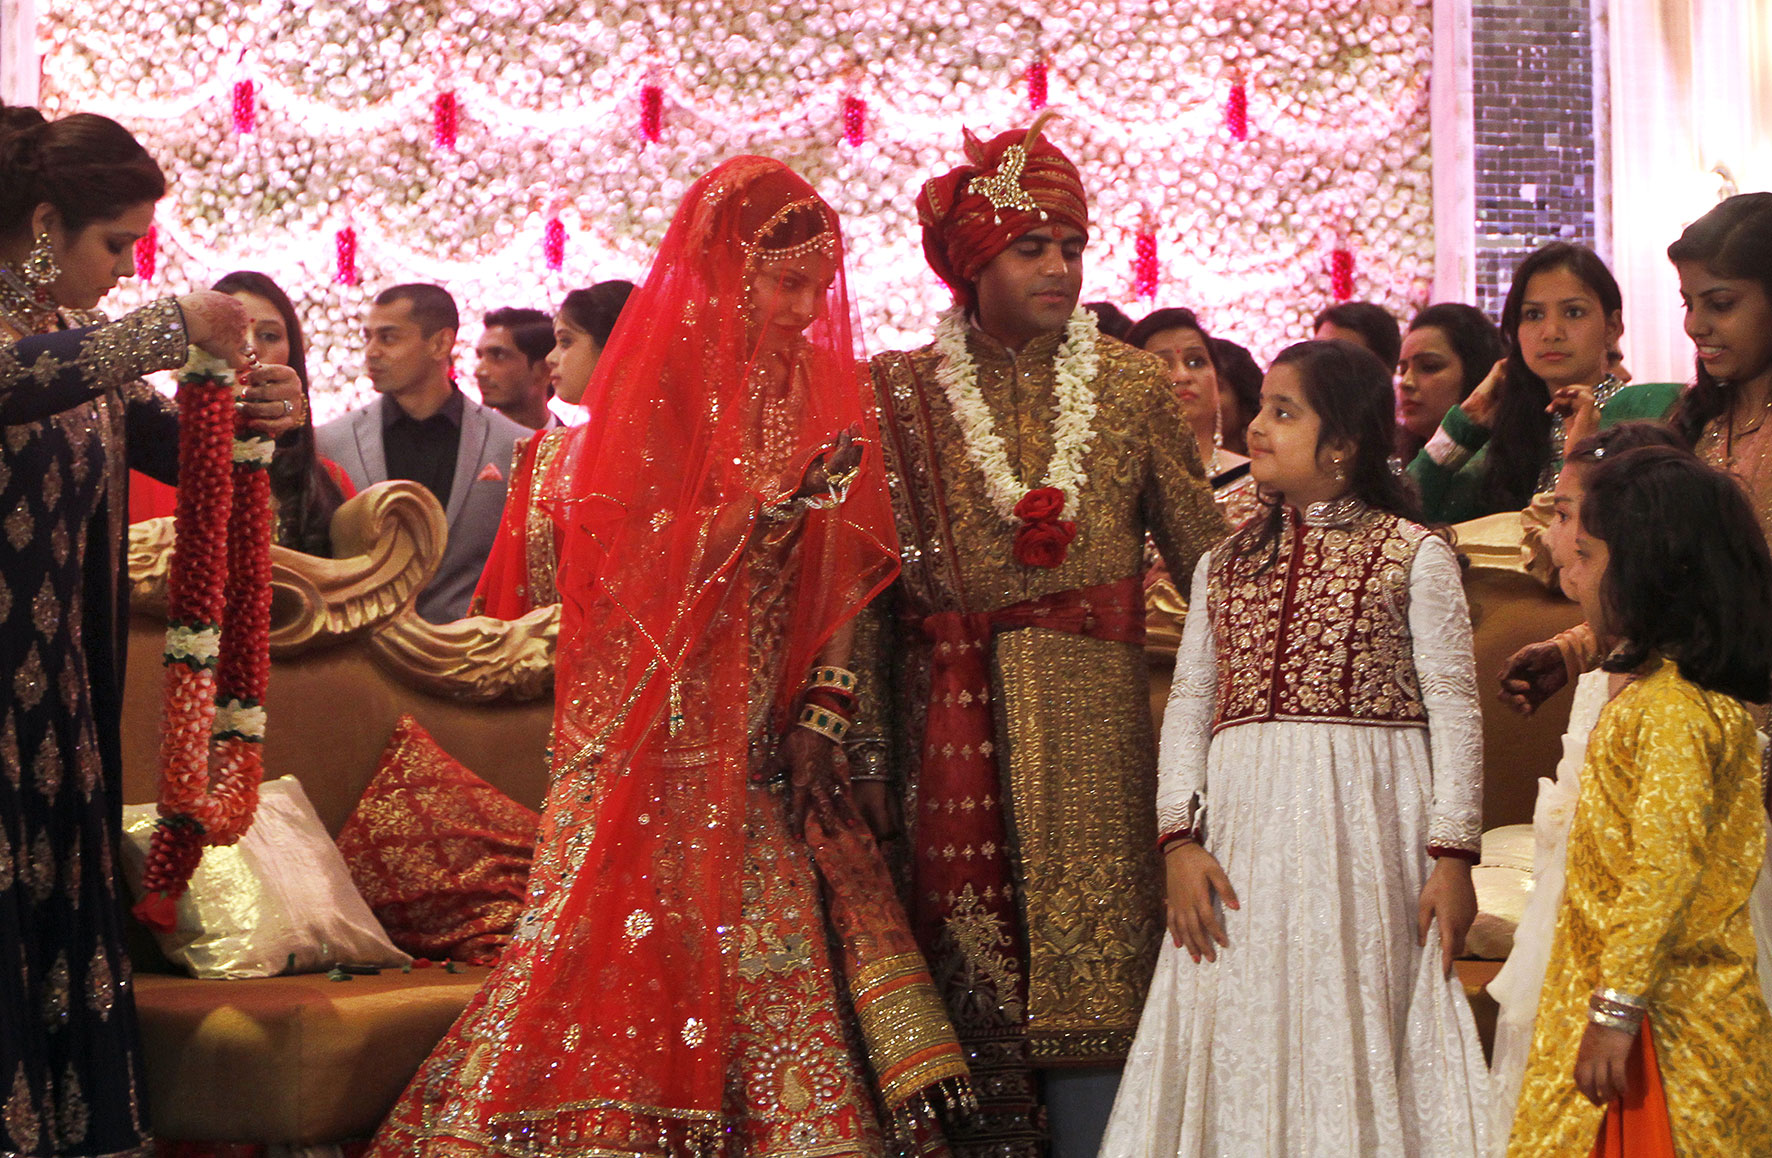 Βίντεο: Στην Ινδία οι γάμοι δεν είναι ποτέ… απλοϊκοί